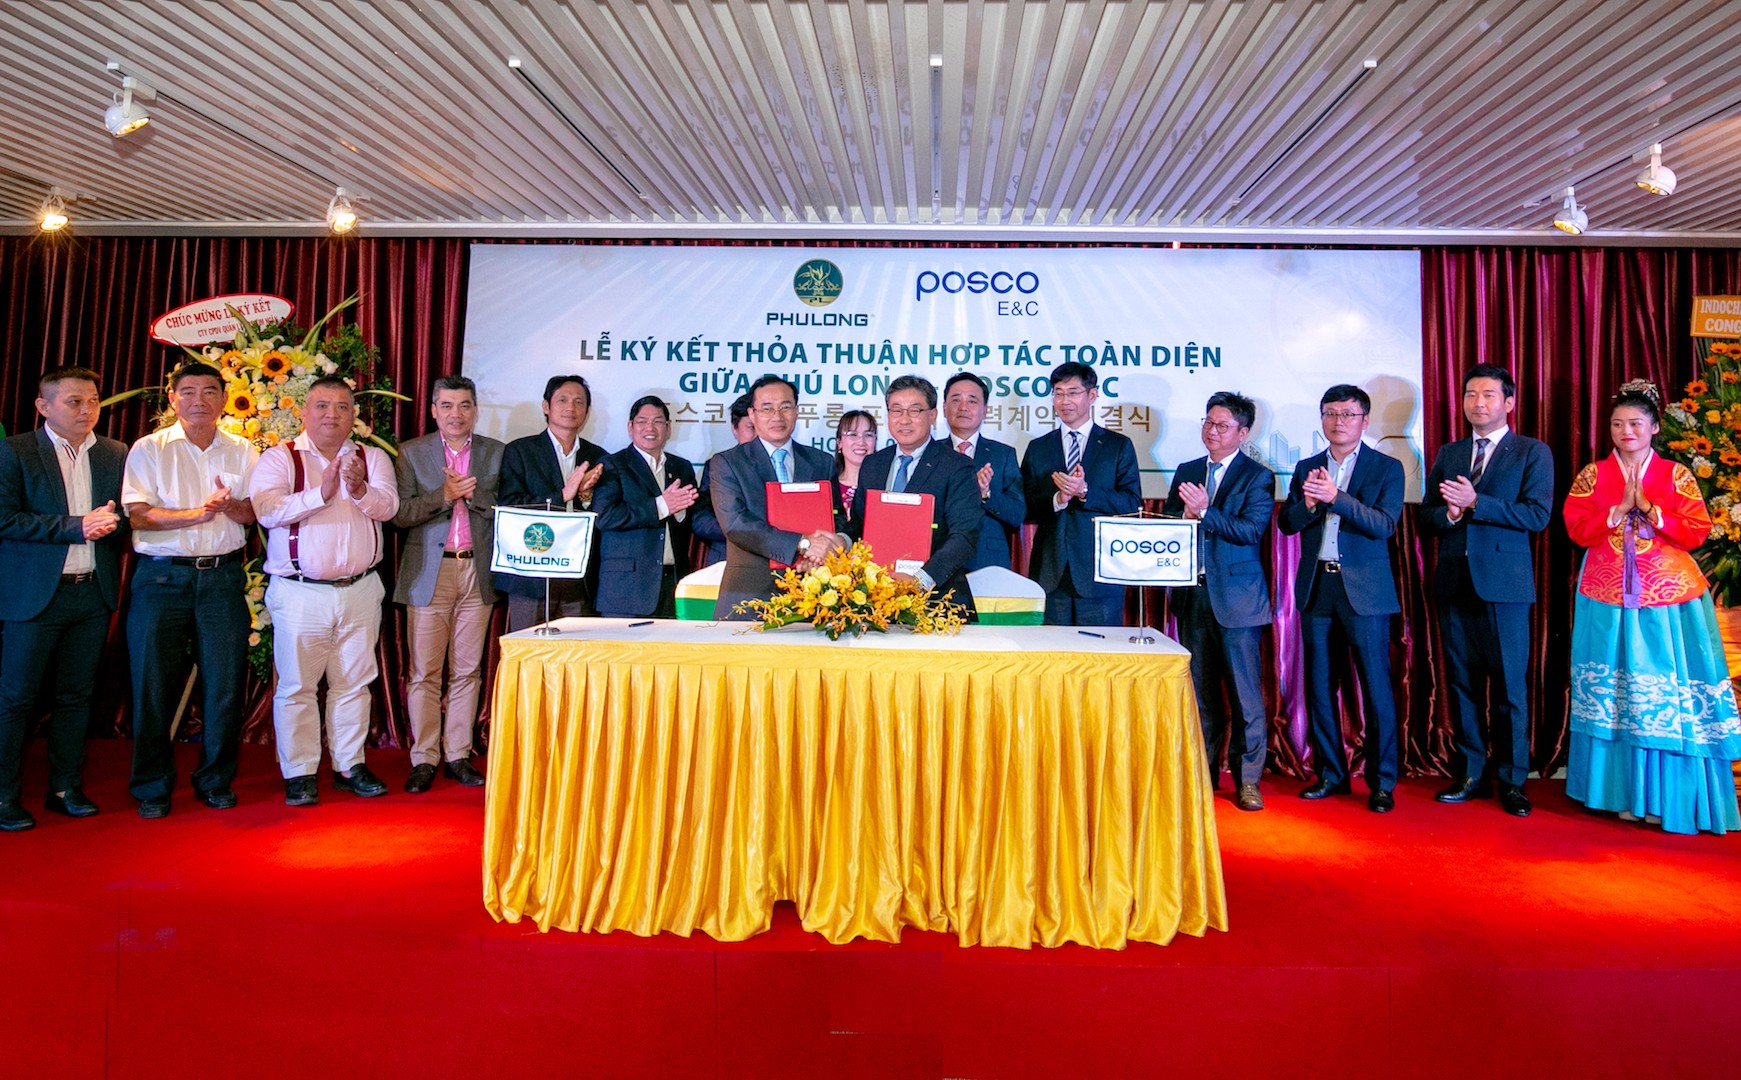 Ký kết thỏa thuận hợp tác toàn diện giữa Công ty Phú Long và Posco